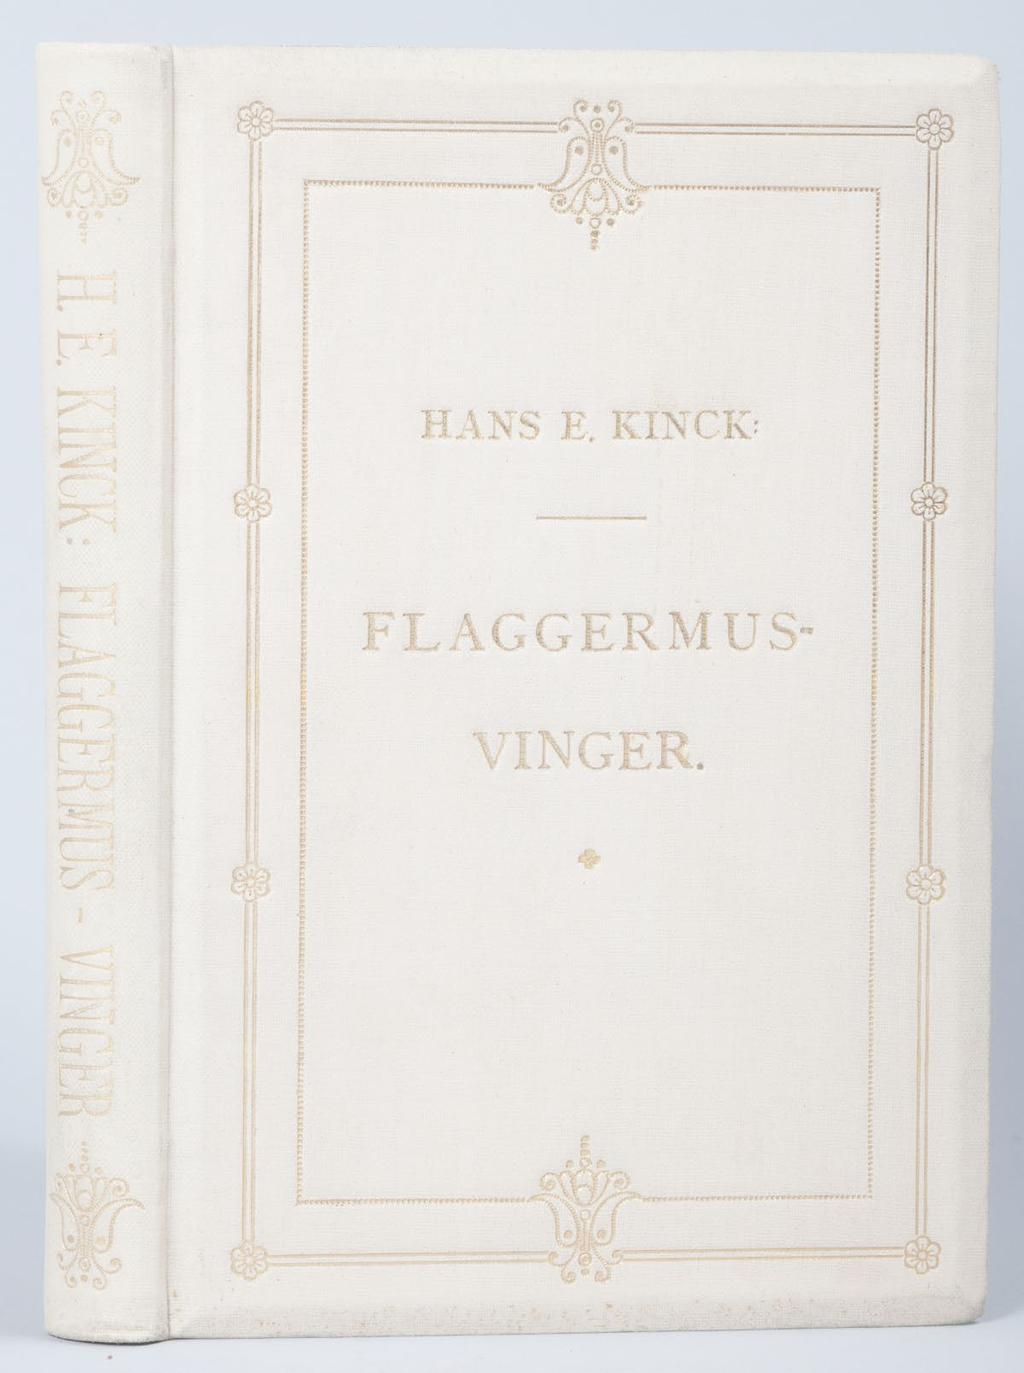 - 7 - FLAGGERMUS-VINGER København. Gyldendal. 1895. 224 sider.